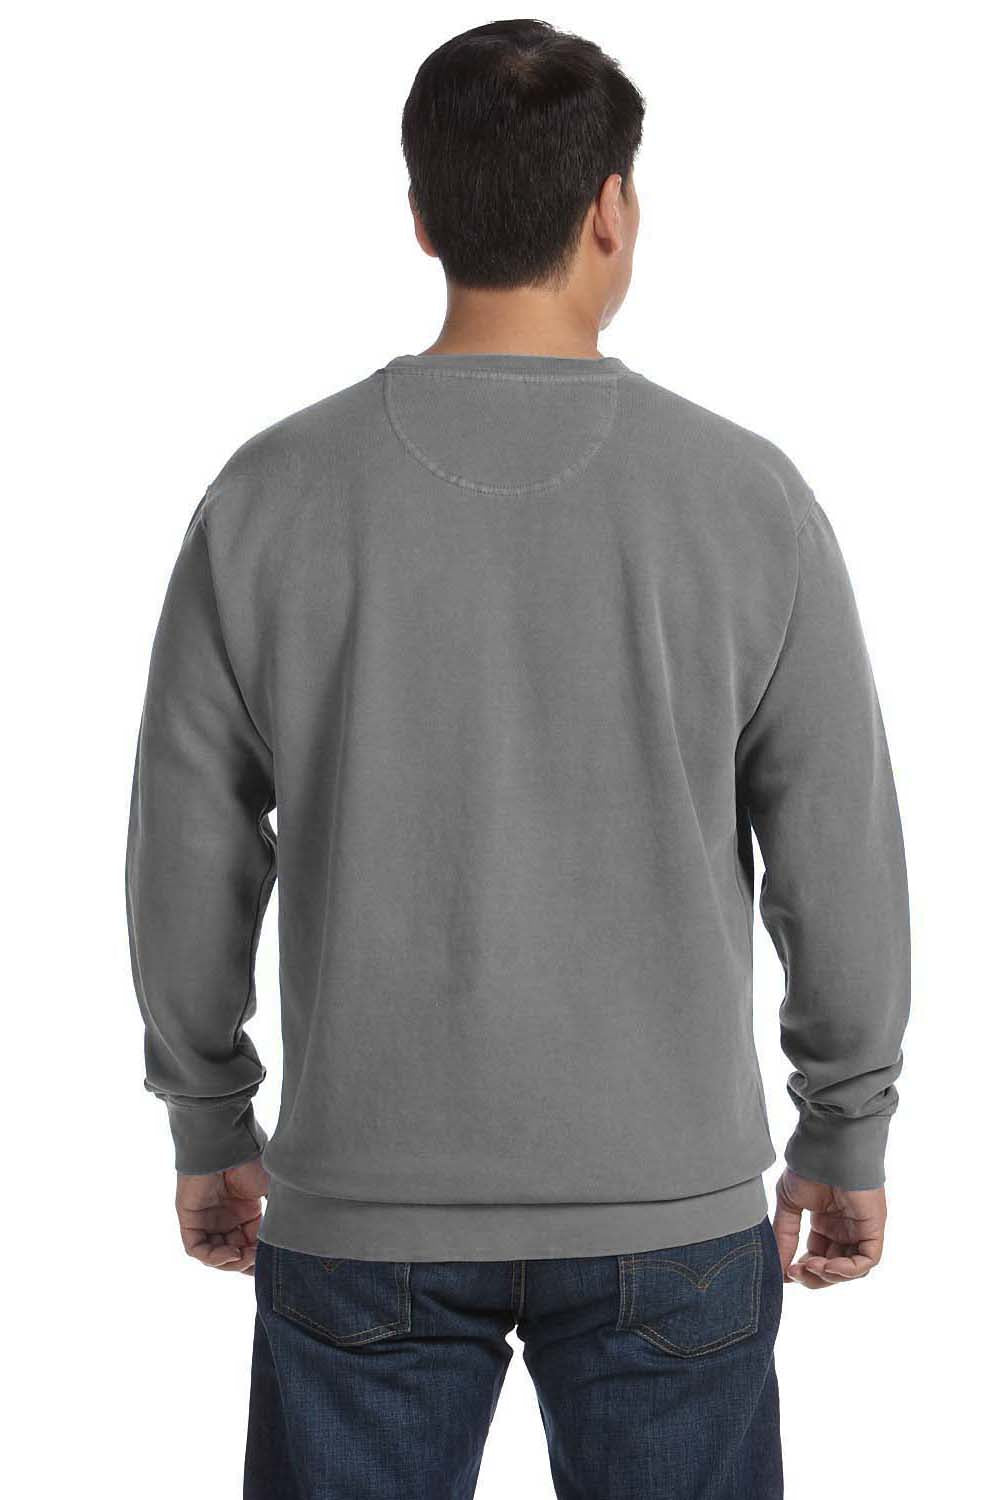 Comfort Colors 1566 Mens Crewneck Sweatshirt Grey Back